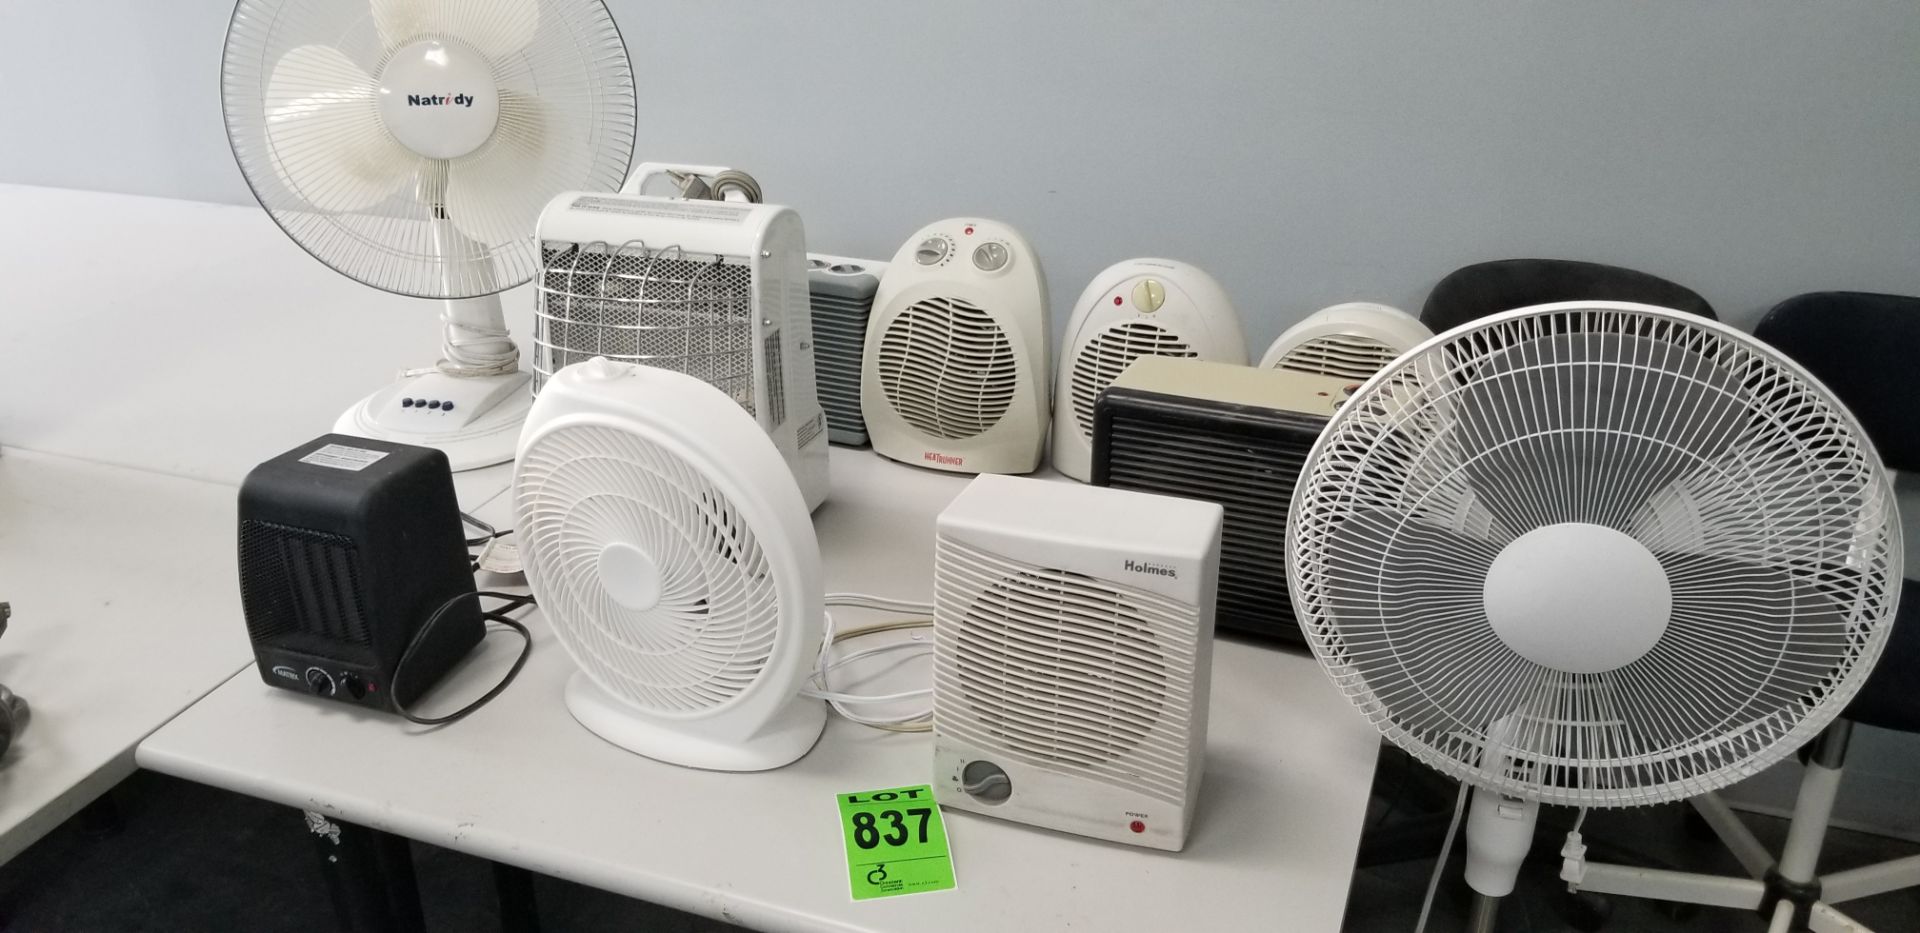 Lot of (3) fans and (8) heaters // Lot de (3) ventilateurs et (8) appareils de chauffage